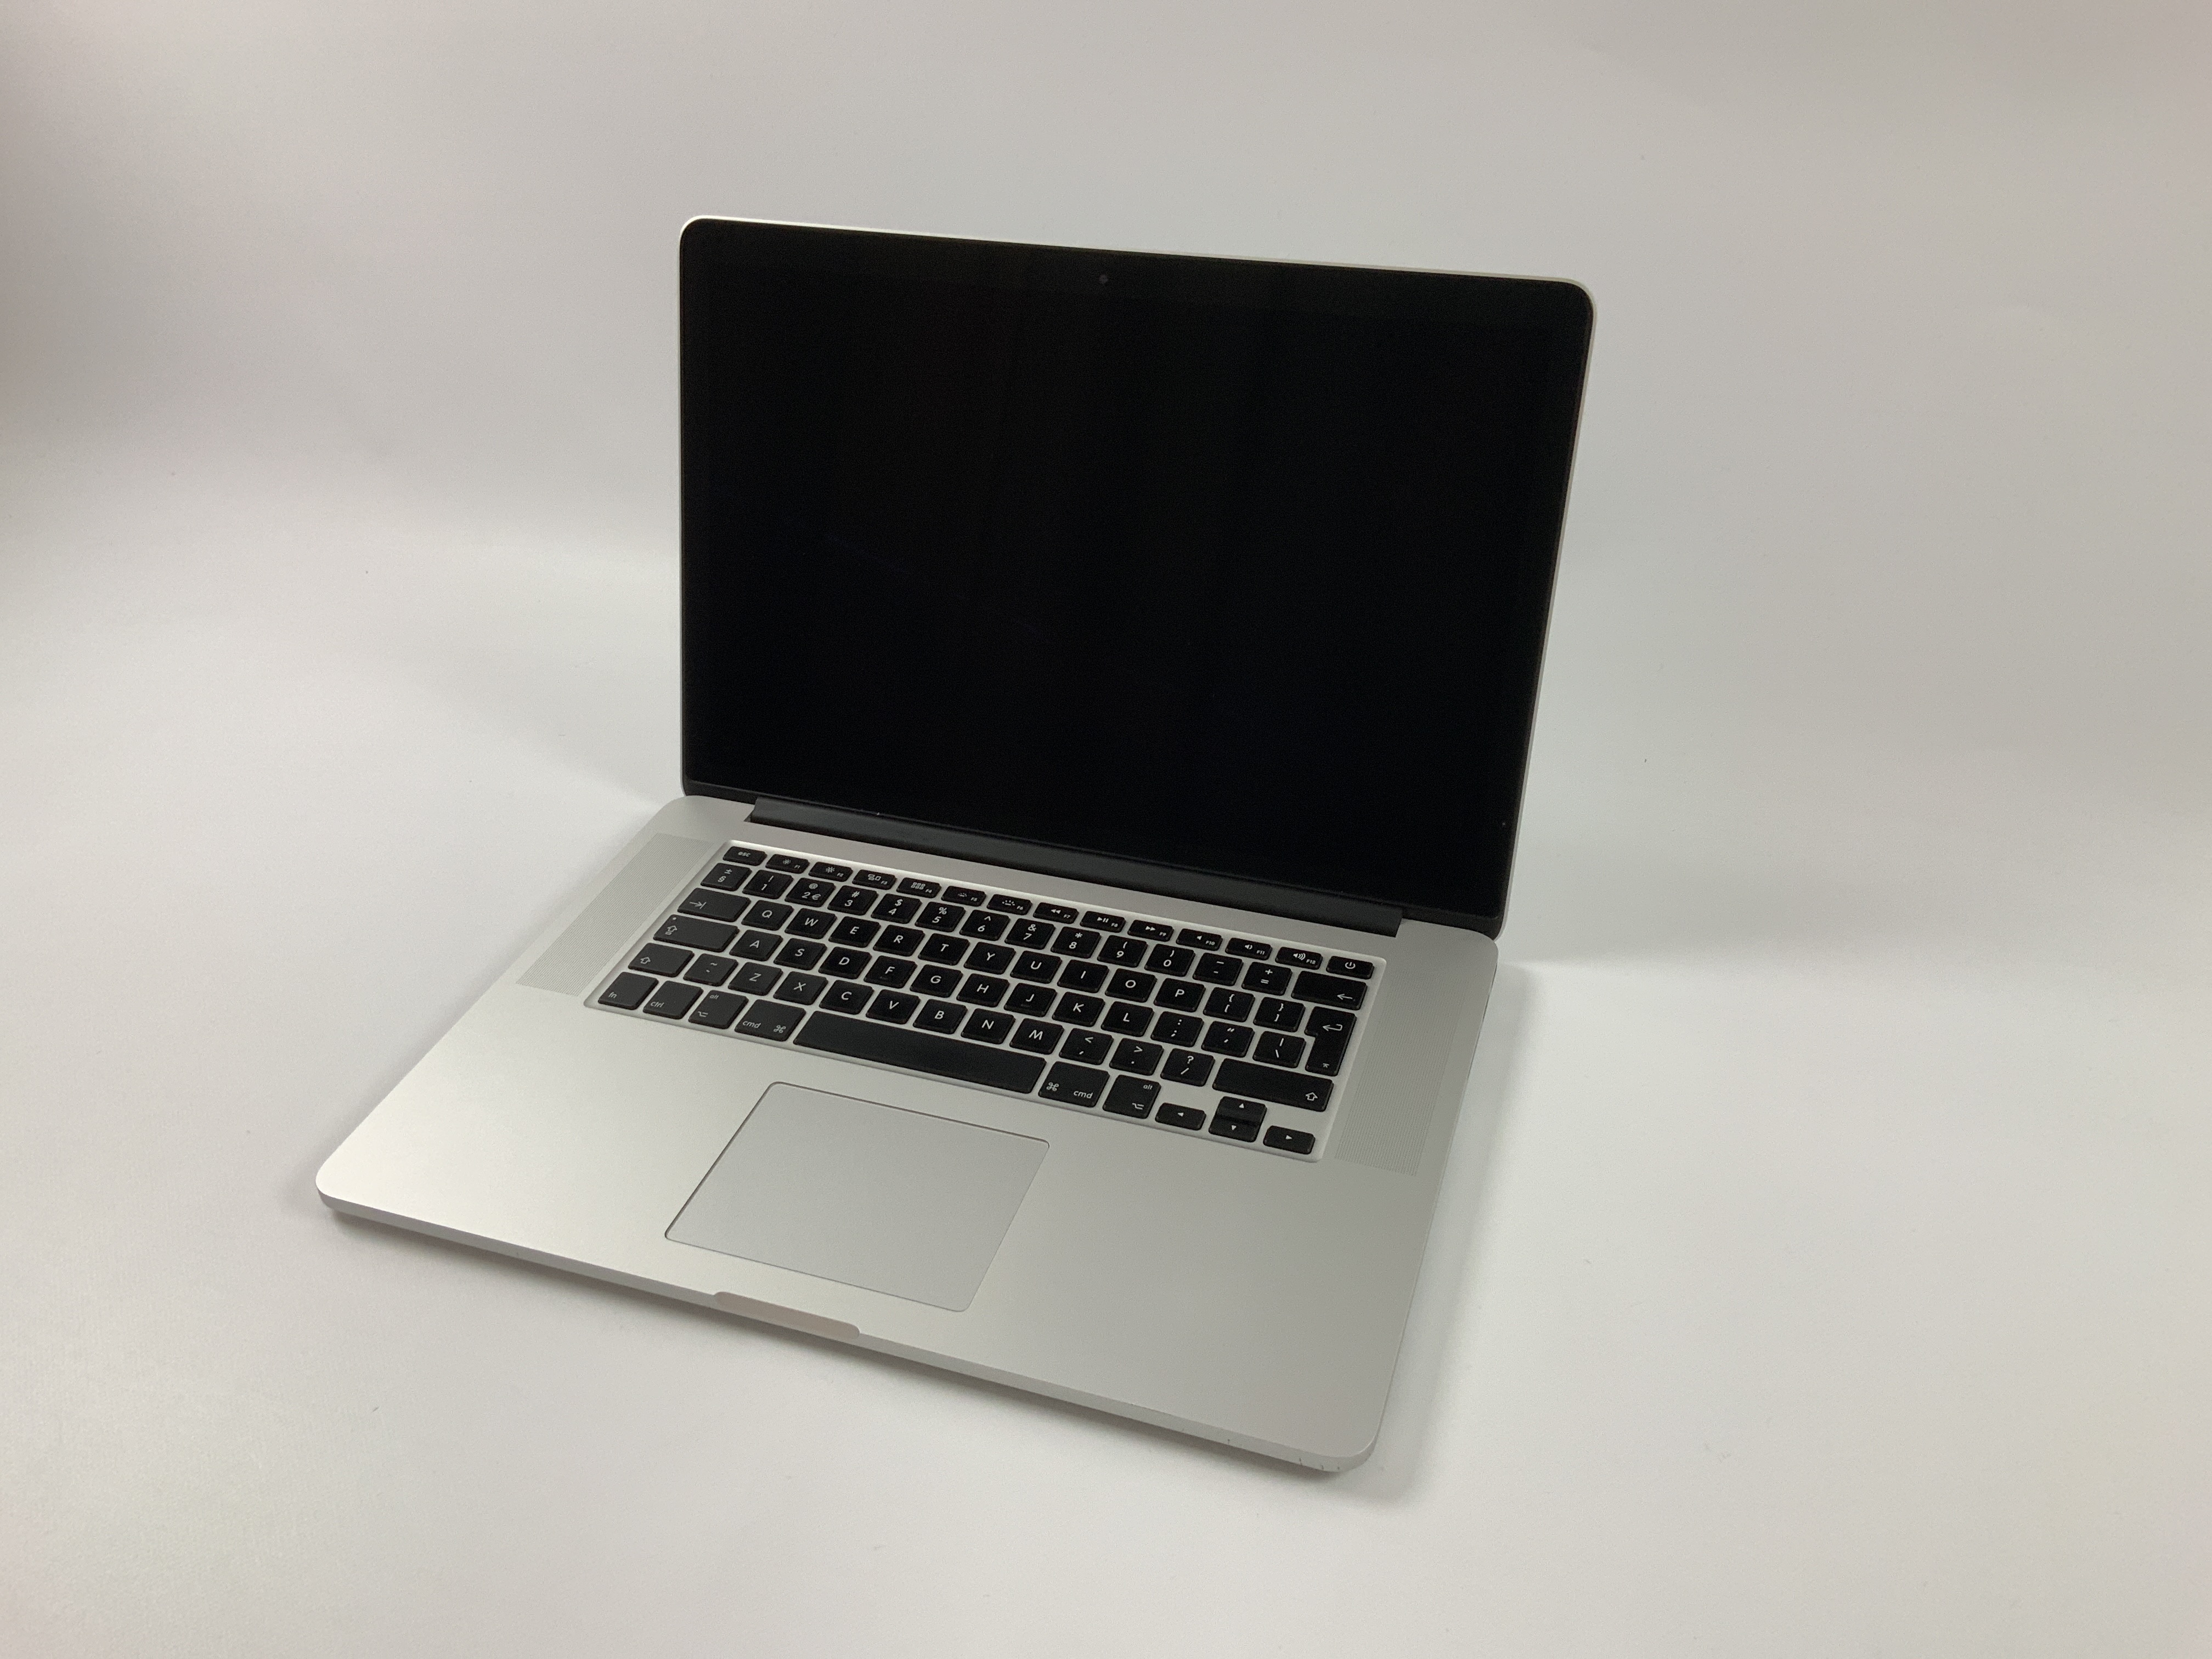 MacBook Pro Retina 15" Mid 2015 (Intel Quad-Core i7 2.5 GHz 16 GB RAM 256 GB SSD), Intel Quad-Core i7 2.5 GHz, 16 GB RAM, 256 GB SSD, Kuva 1